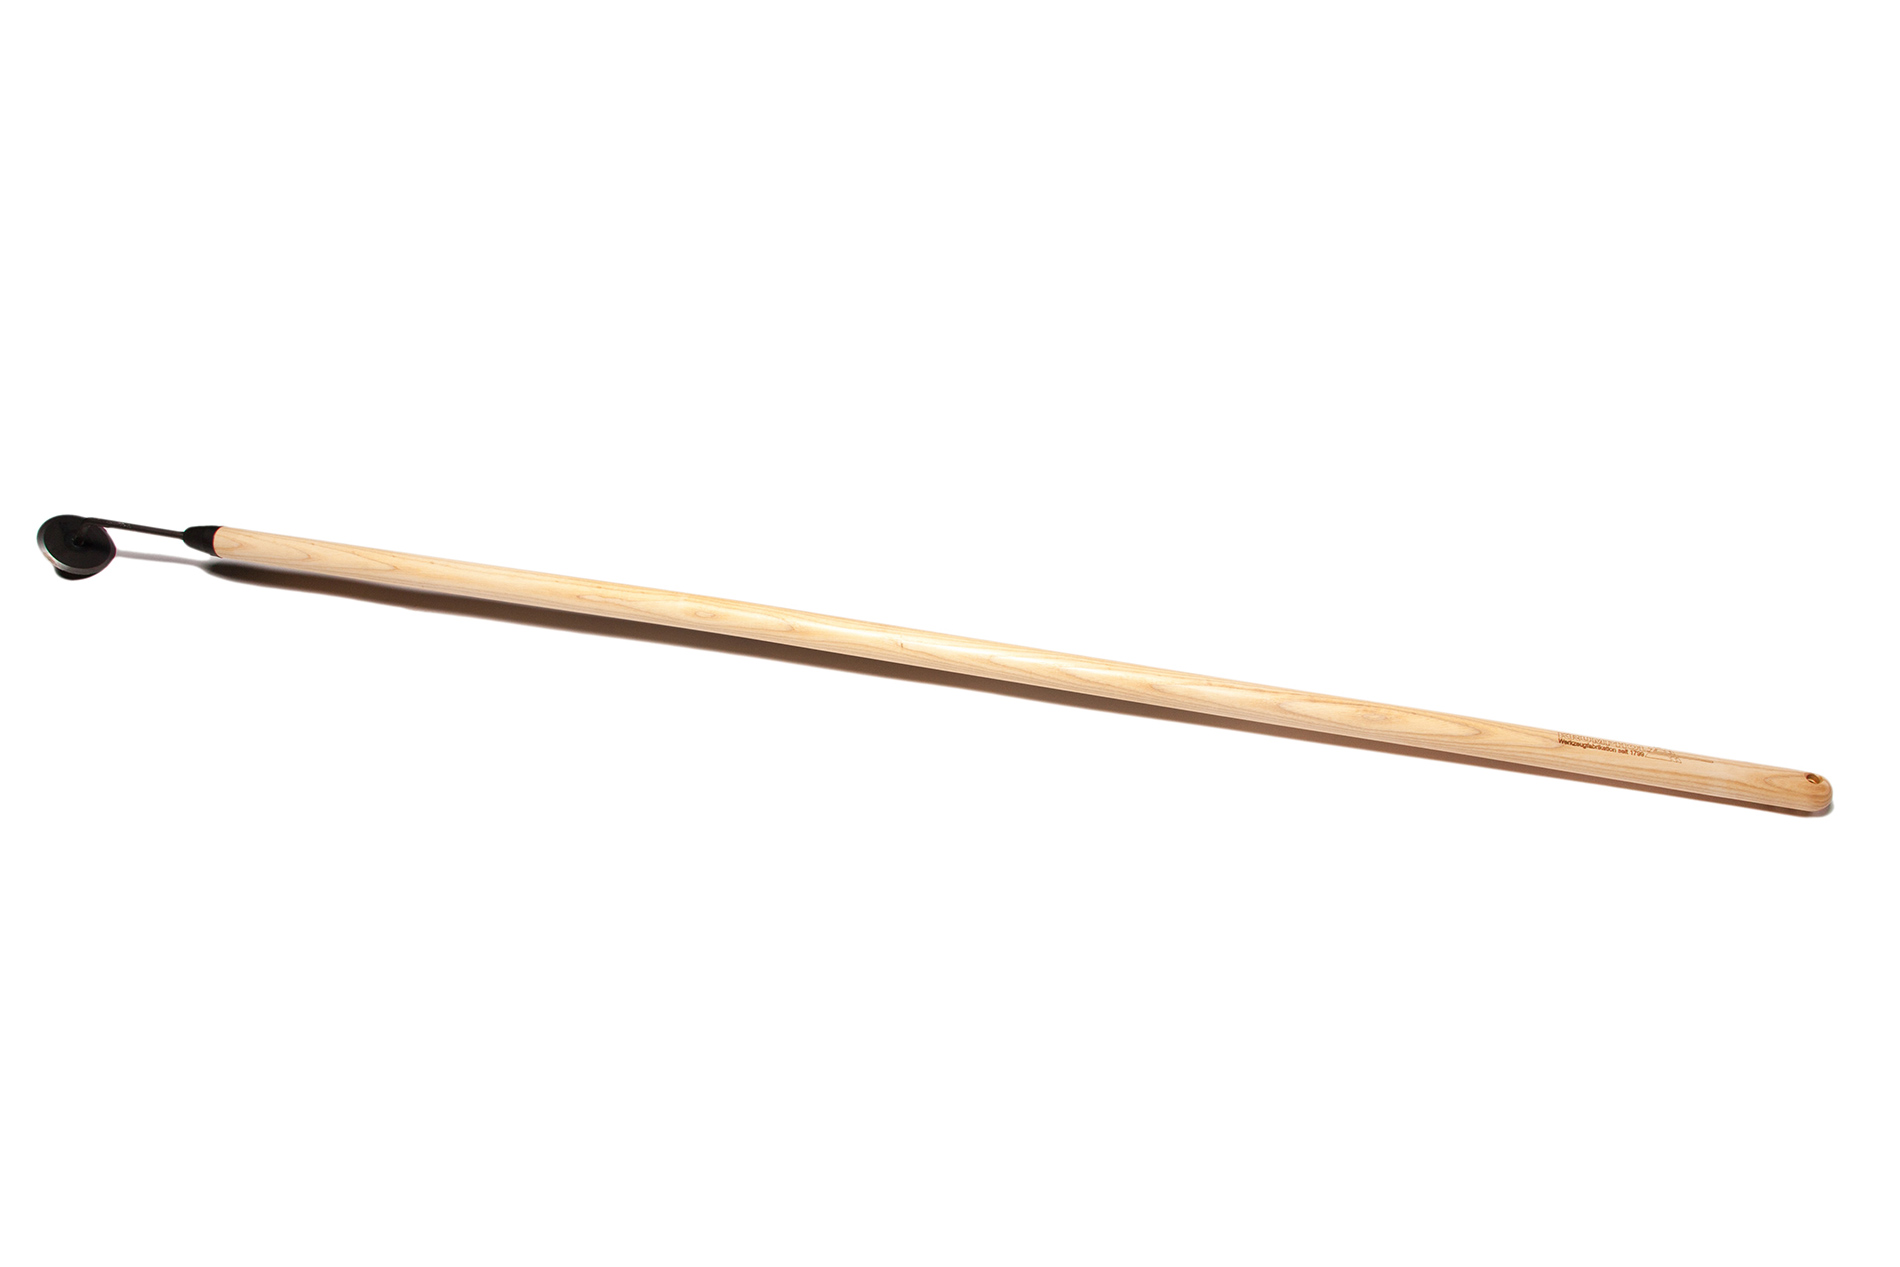 Krumpholz Gartendisk (Unkrautmesser) mit langem Eschenstiel (130 cm)